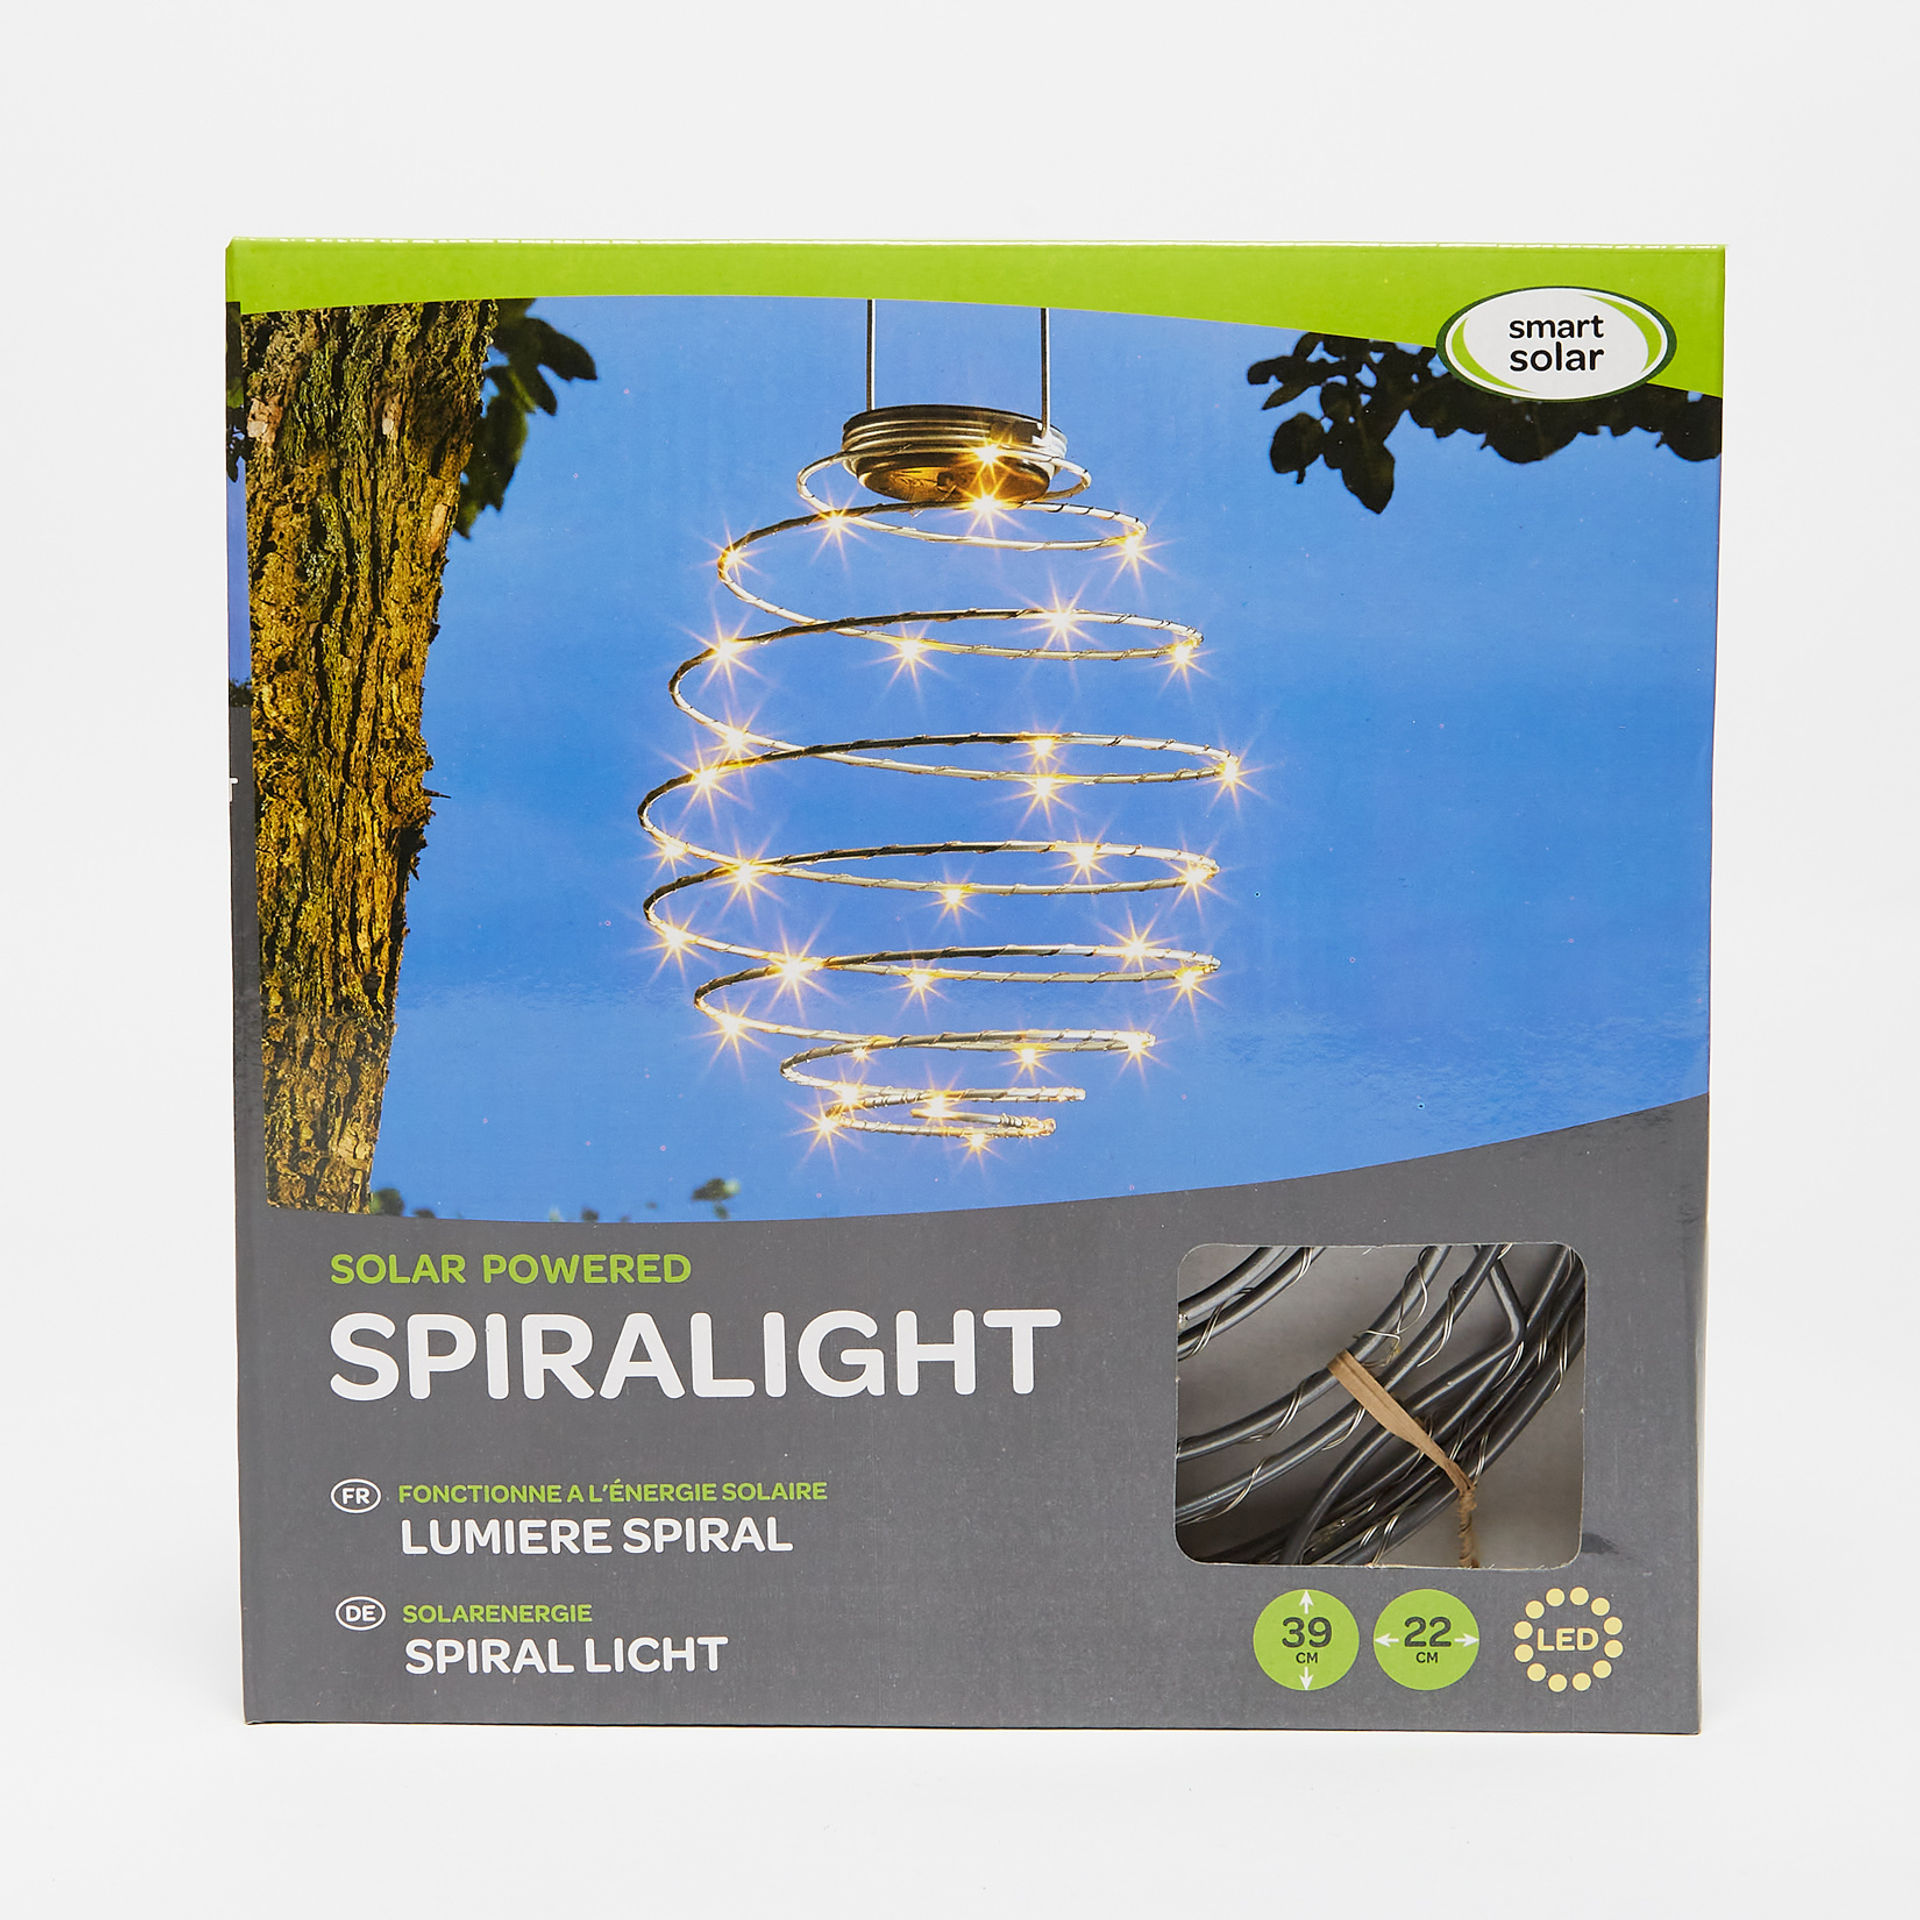 SpiraLight Solar Lights